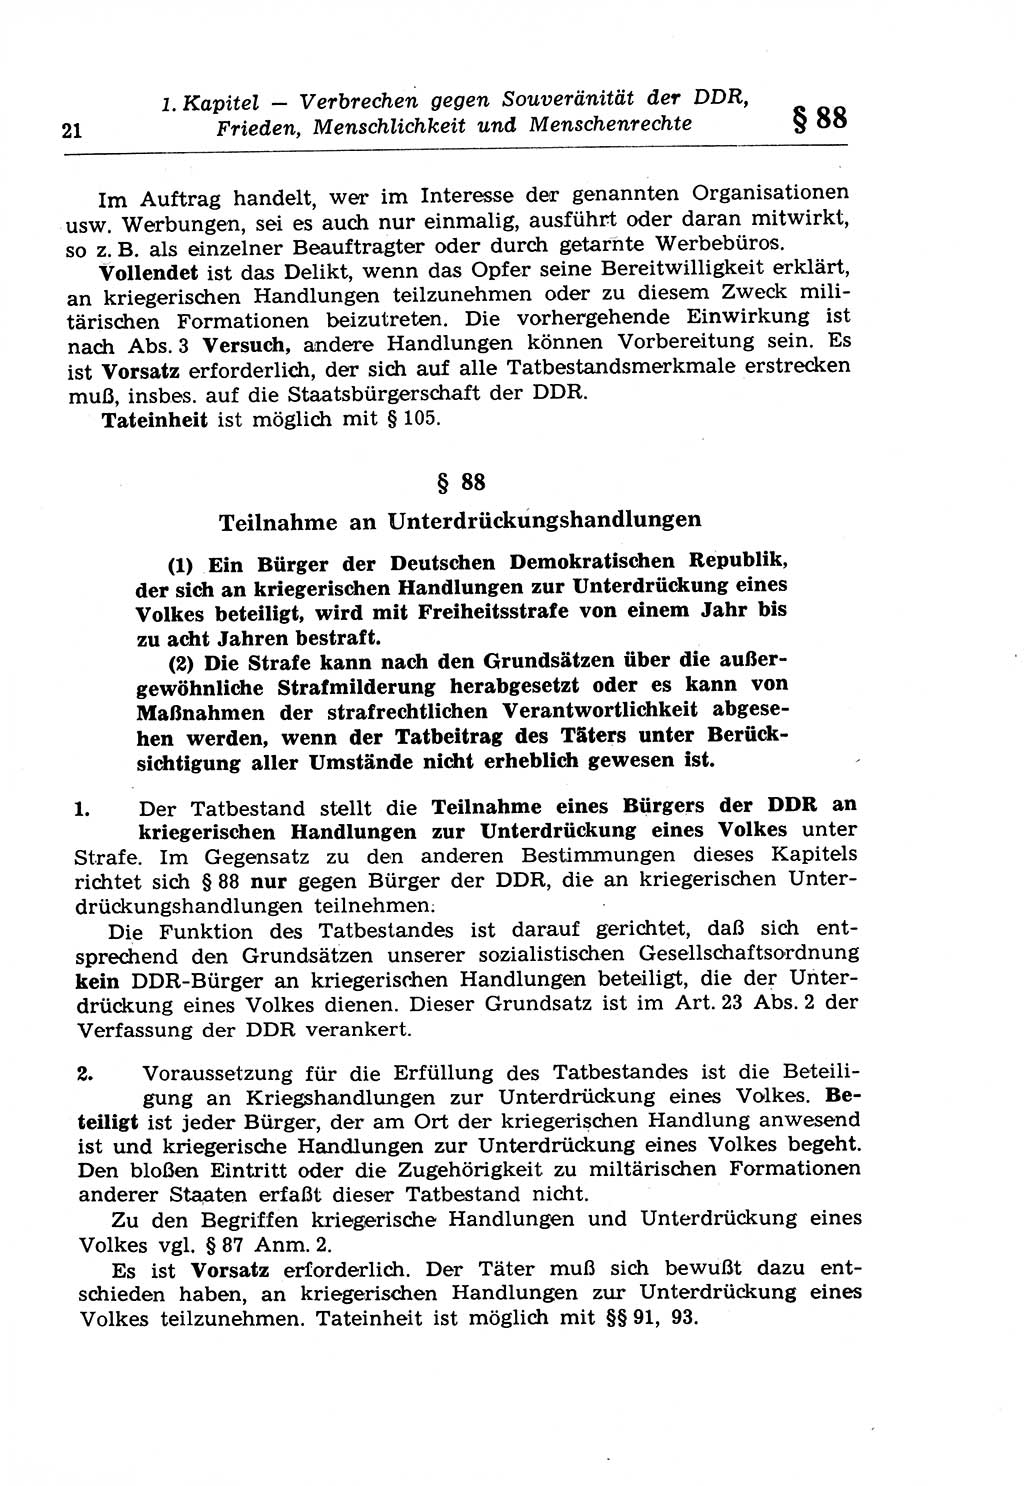 Strafrecht der Deutschen Demokratischen Republik (DDR), Lehrkommentar zum Strafgesetzbuch (StGB), Besonderer Teil 1970, Seite 21 (Strafr. DDR Lehrkomm. StGB BT 1970, S. 21)